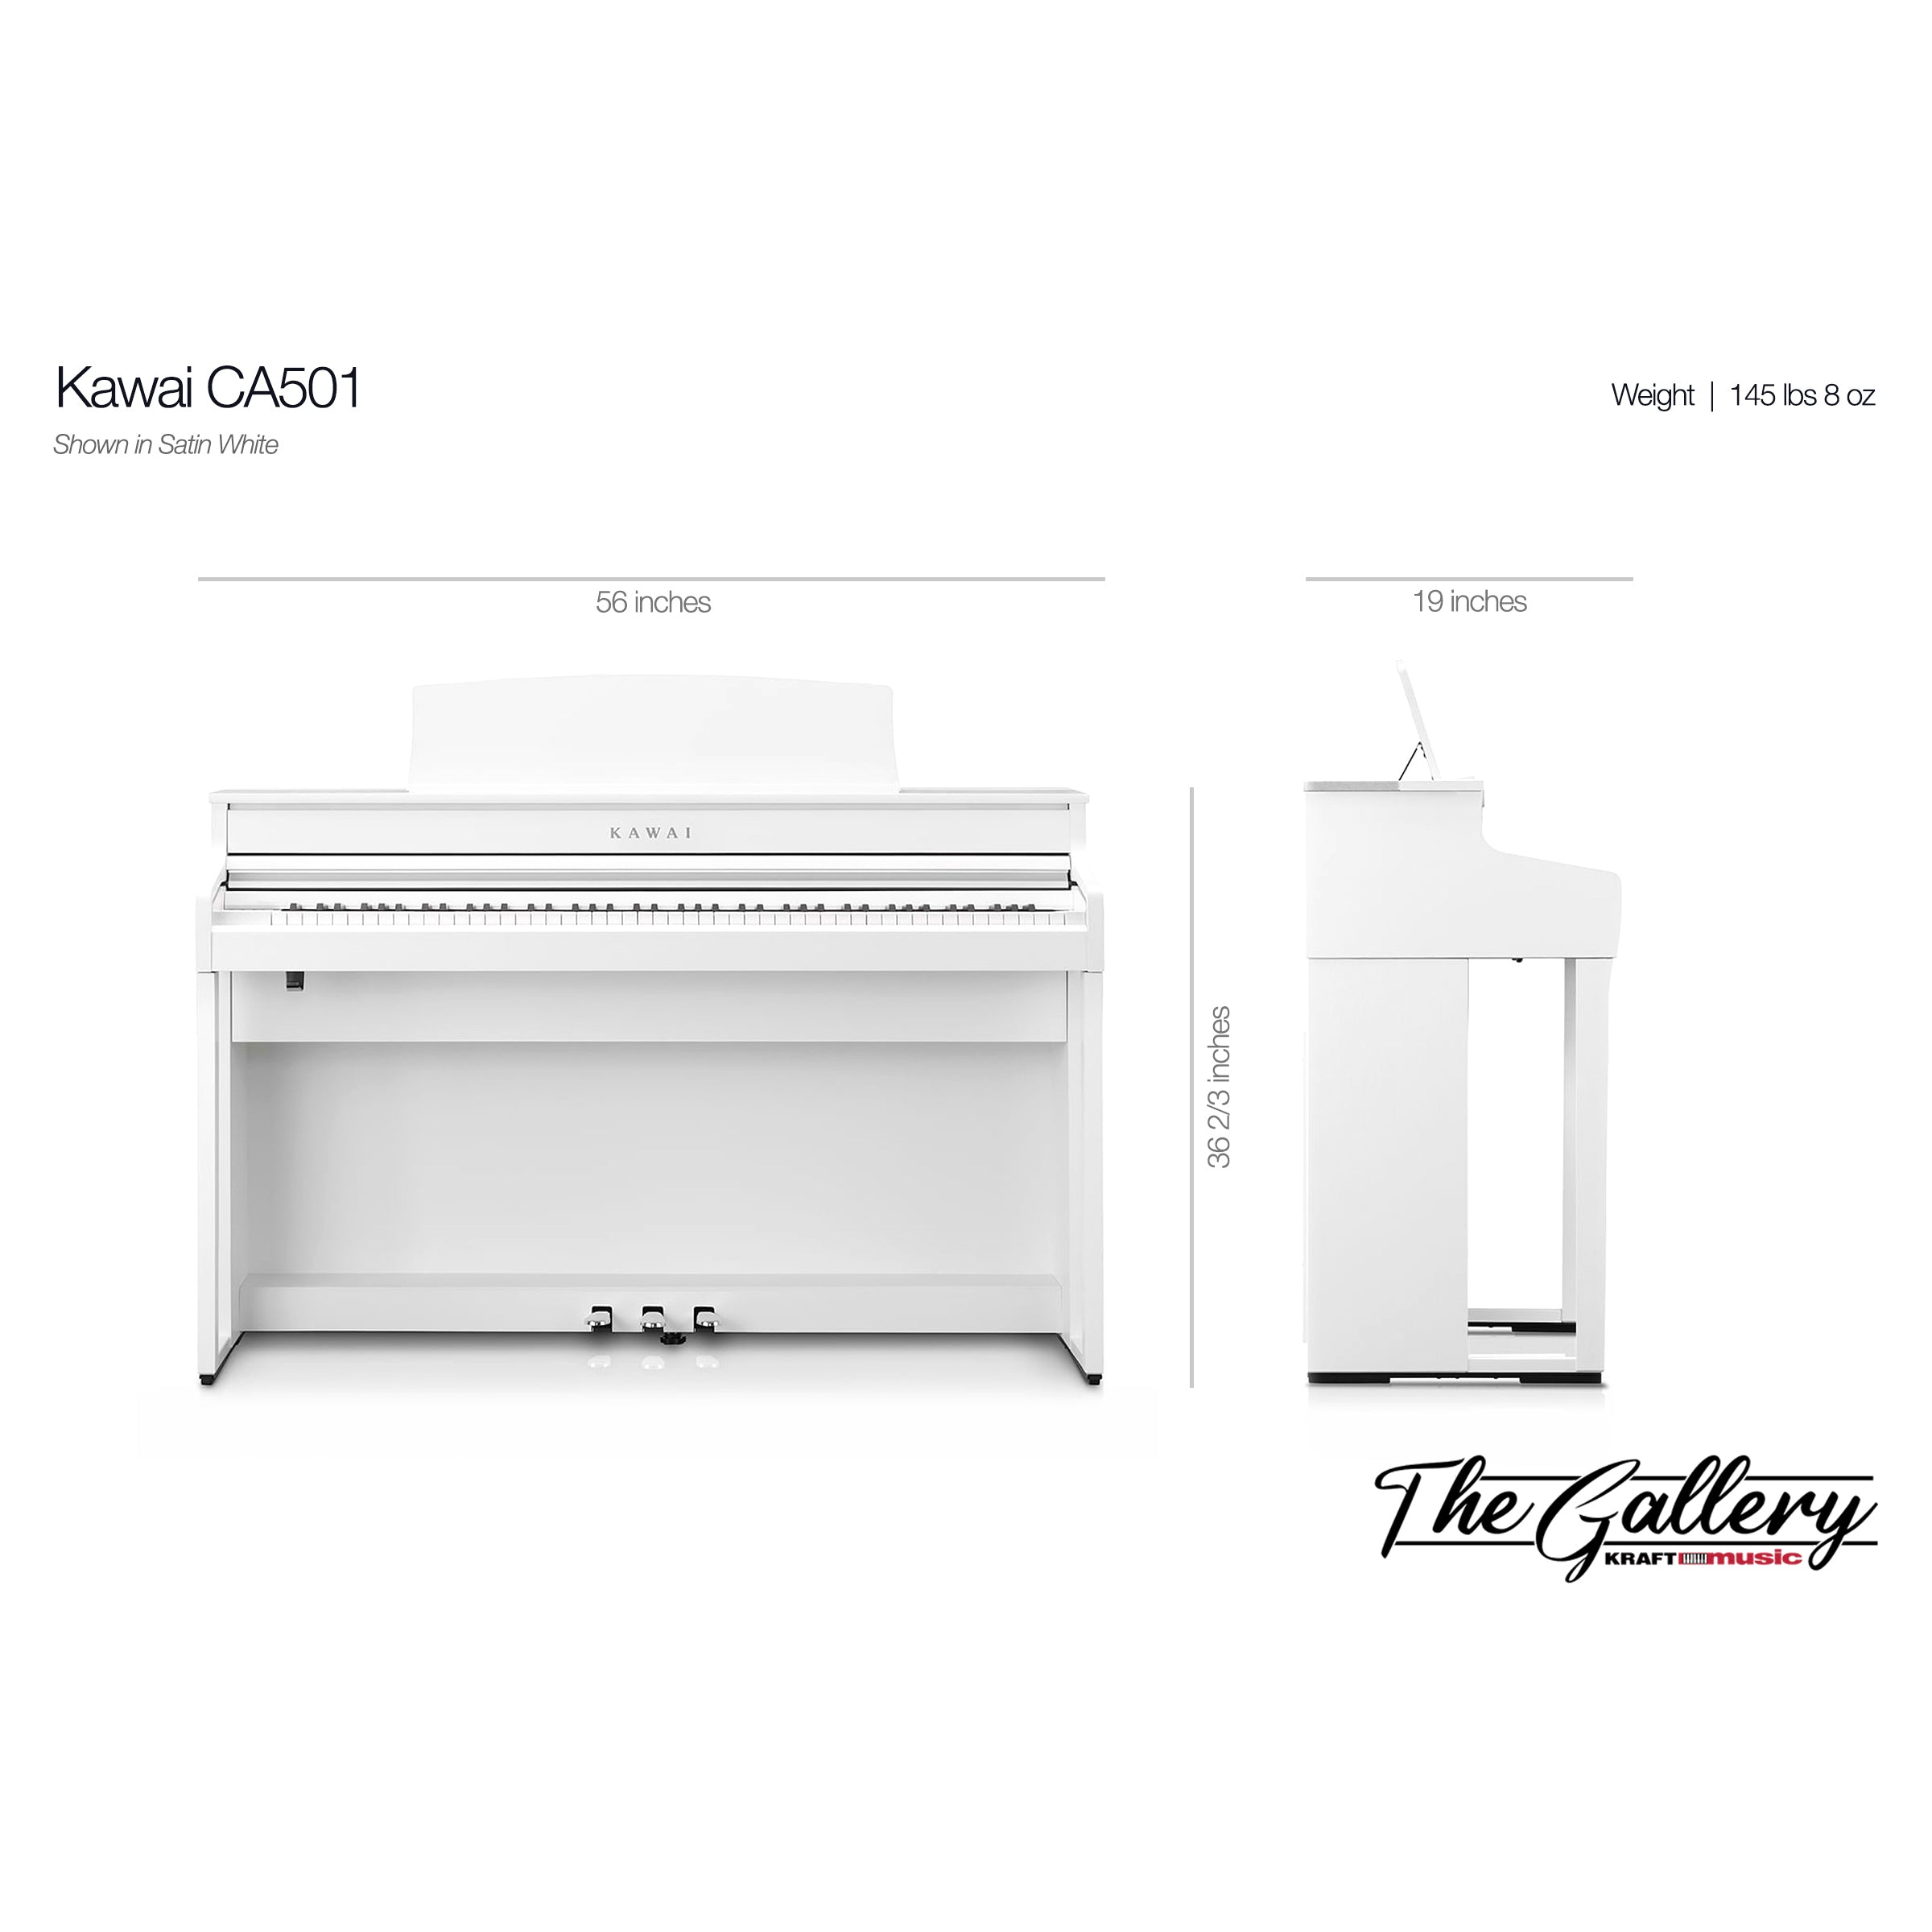 Kawai CA501 Concert Artist Digital Piano - Dimensions